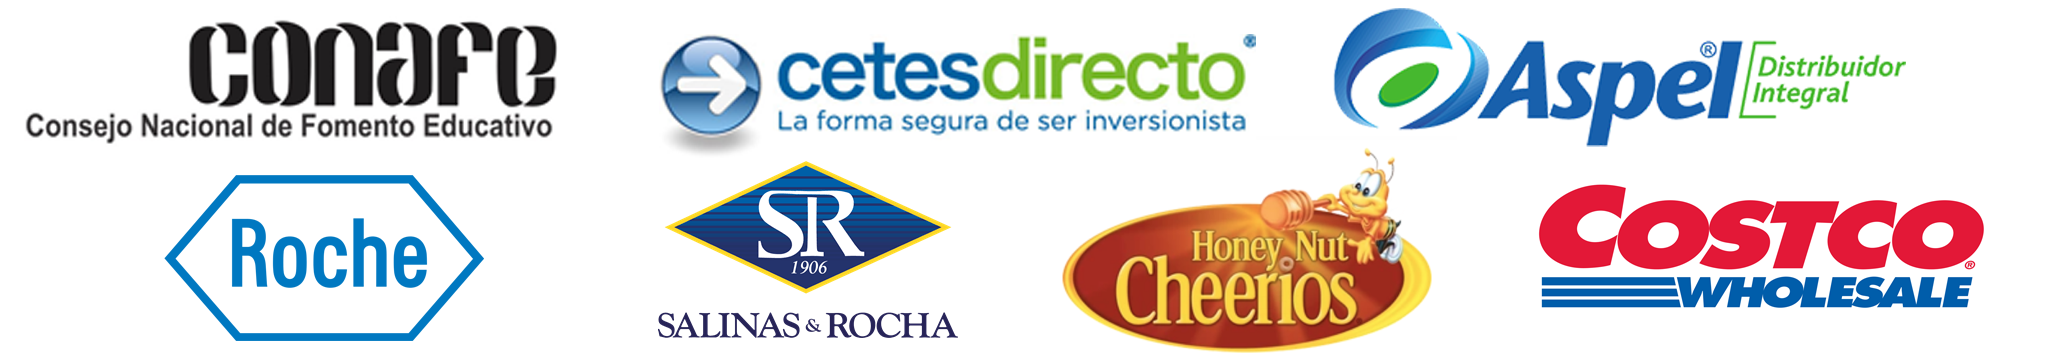 Locutor comercial de marcas Conafe, cetes directo, Aspel, Roche, Salinas y Rocha, HoneyNut Cheerios, Costco